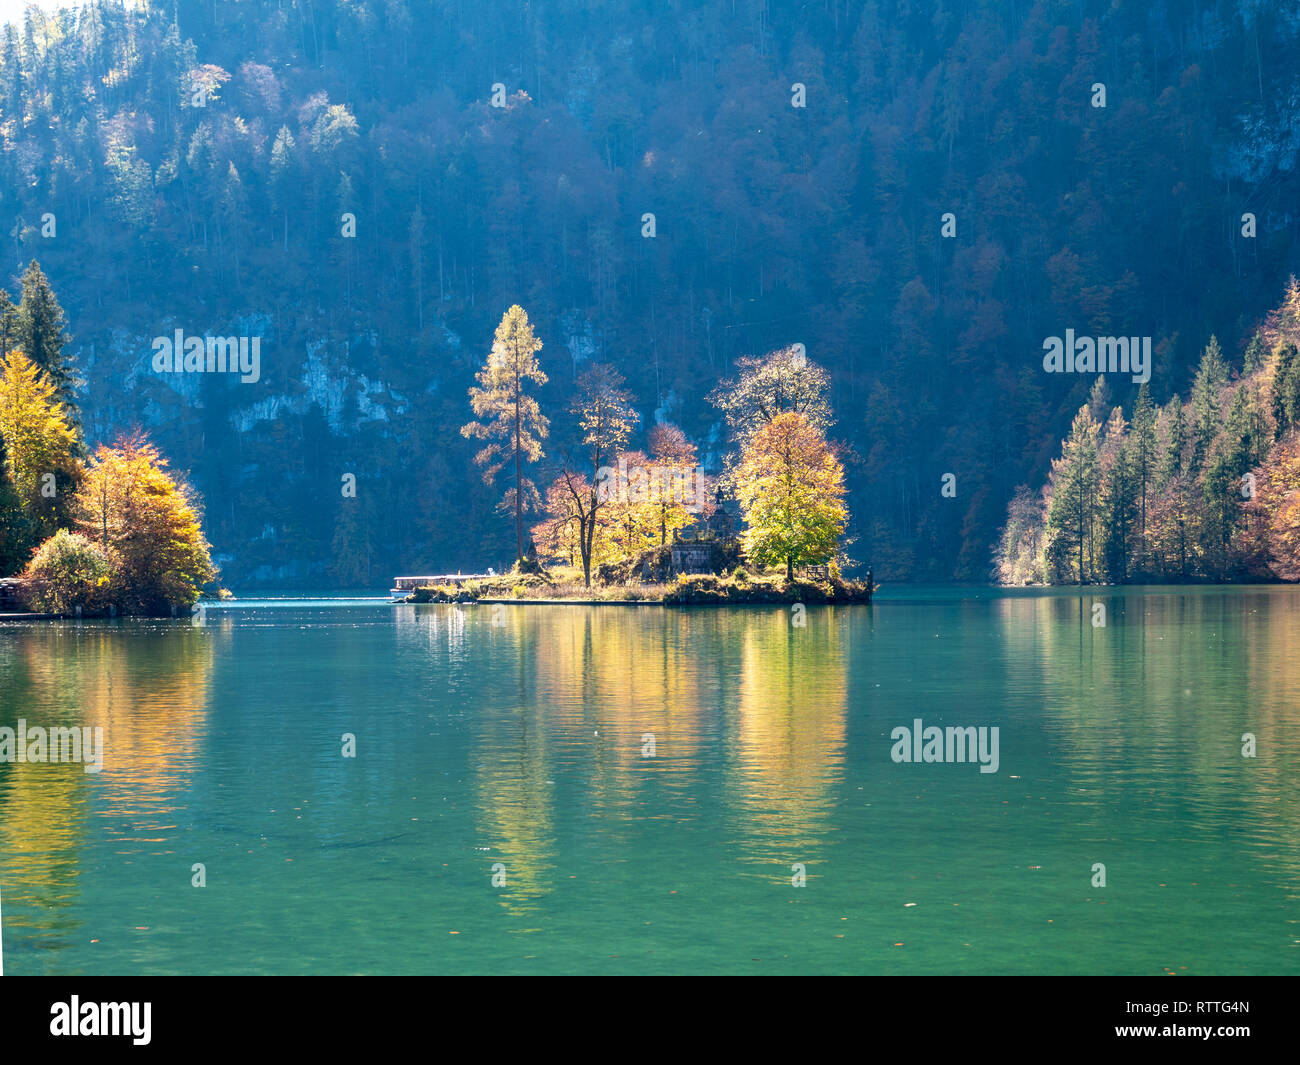 Imagen del lago Koenigssee en berchtesgarden Alemania durante el otoño con hermosos y coloridos árboles isla con reflejos de agua Foto de stock